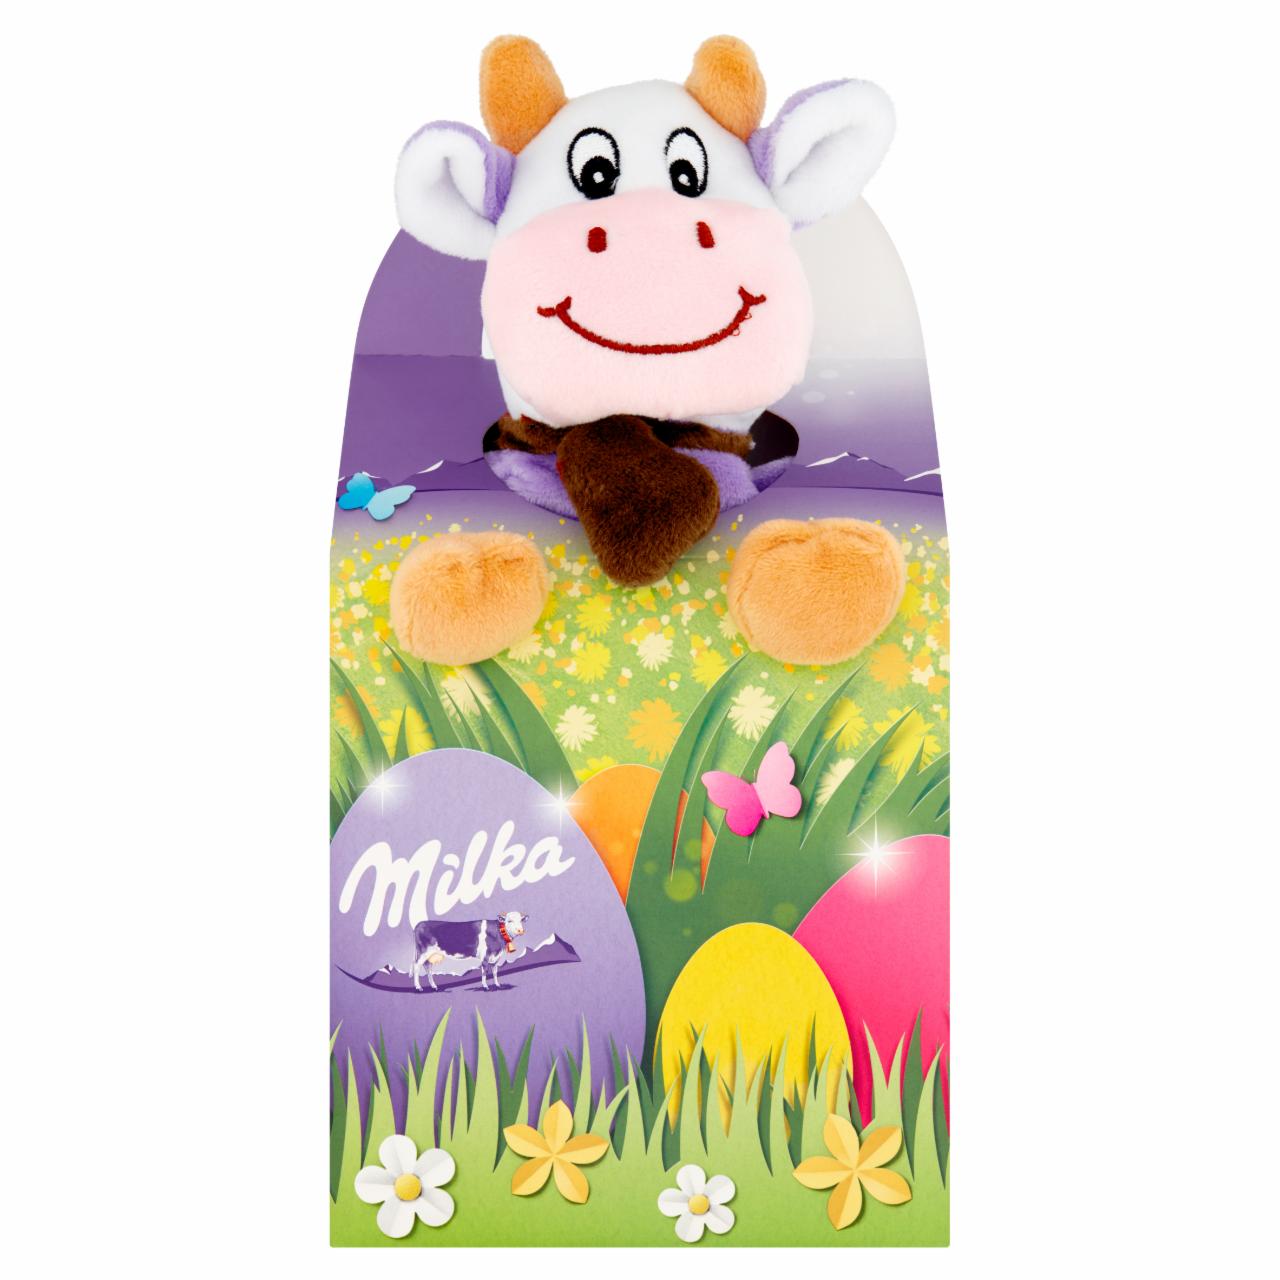 Zdjęcia - Milka Mieszanka czekolady mlecznej nadziewanej czekolady mlecznej i draży i pluszowa zabawka